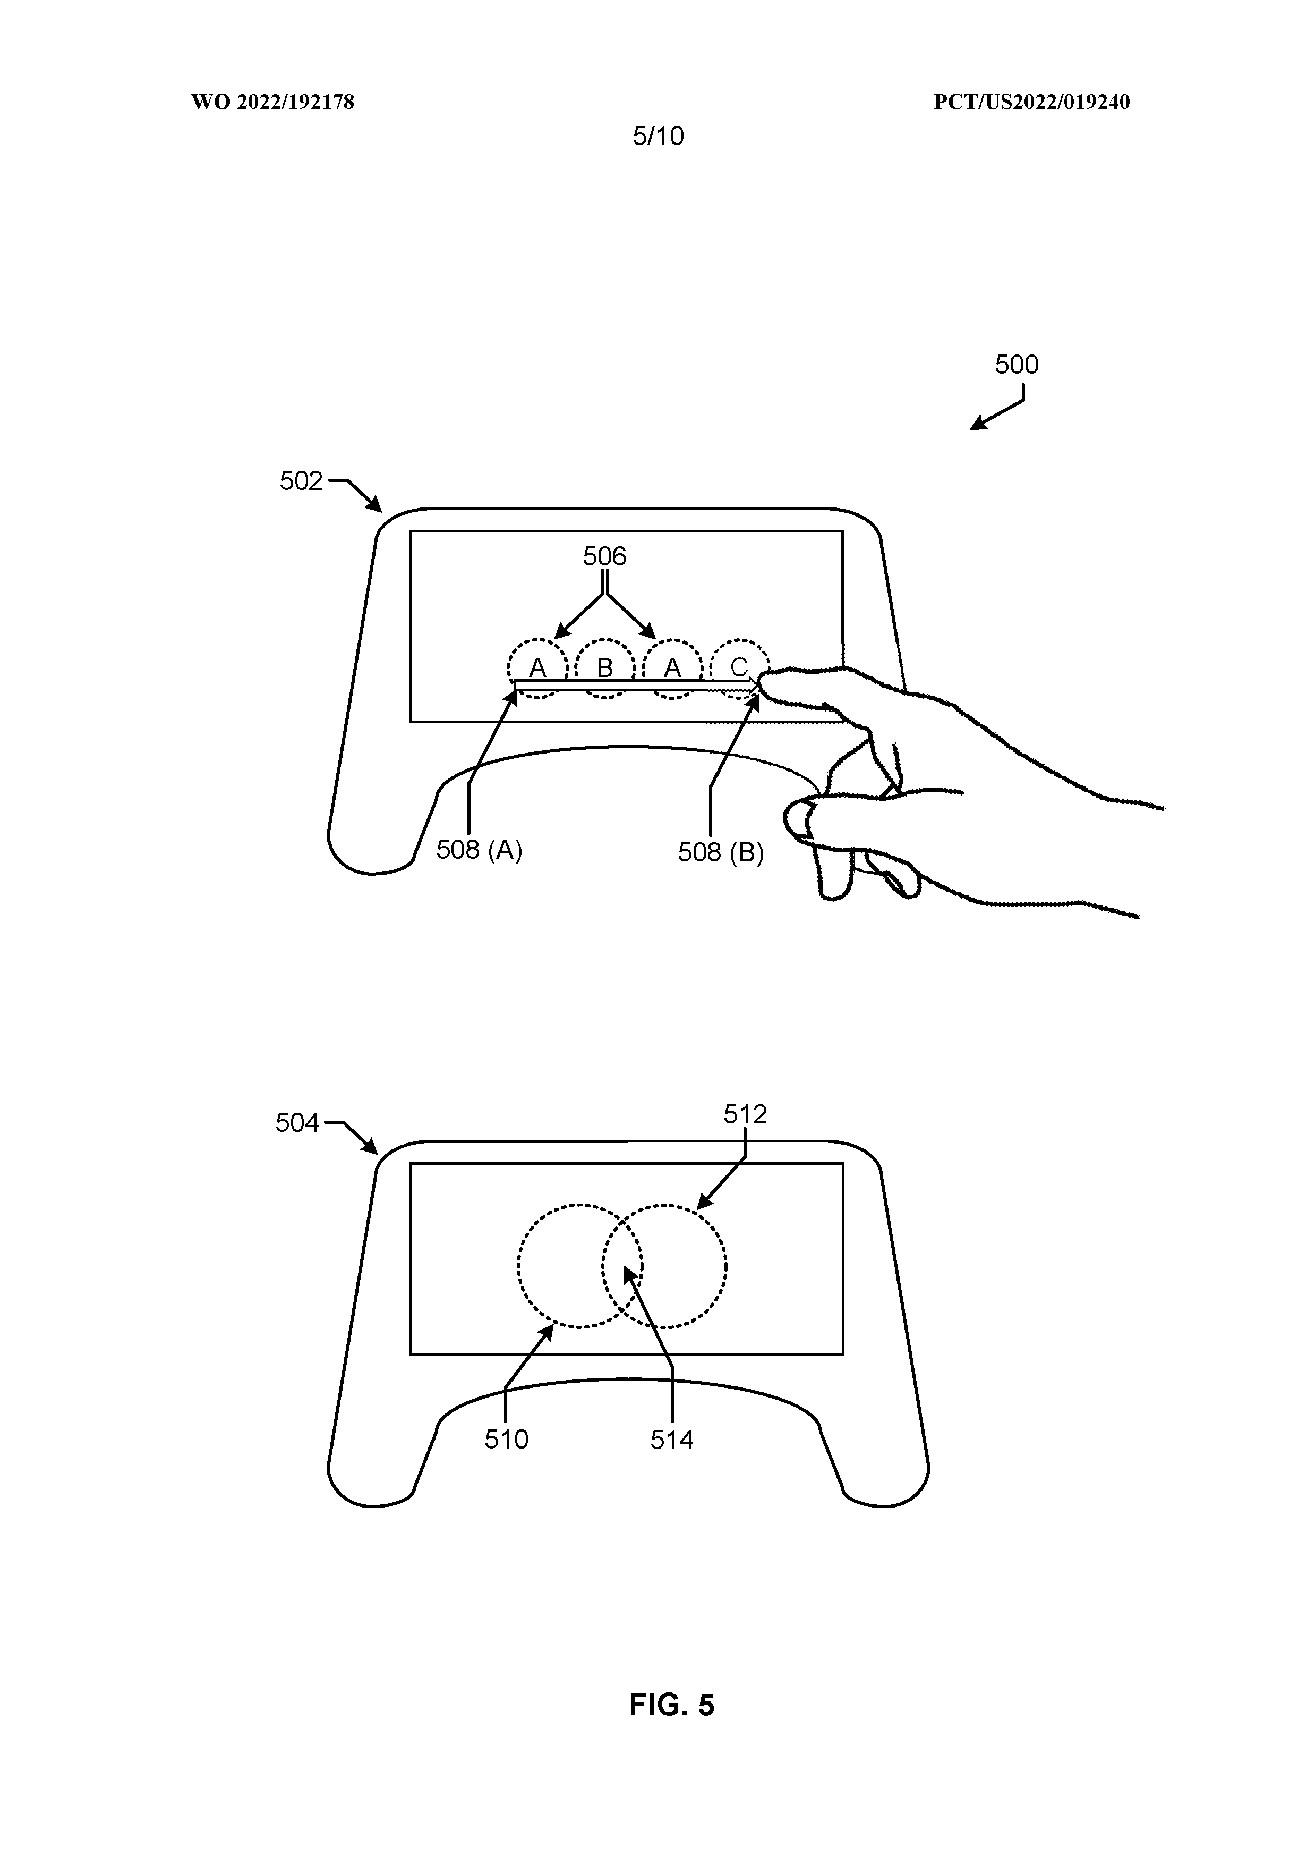 Patentes de tela sensível ao toque da Bungie podem suportar relatórios de jogos para dispositivos móveis de Destiny